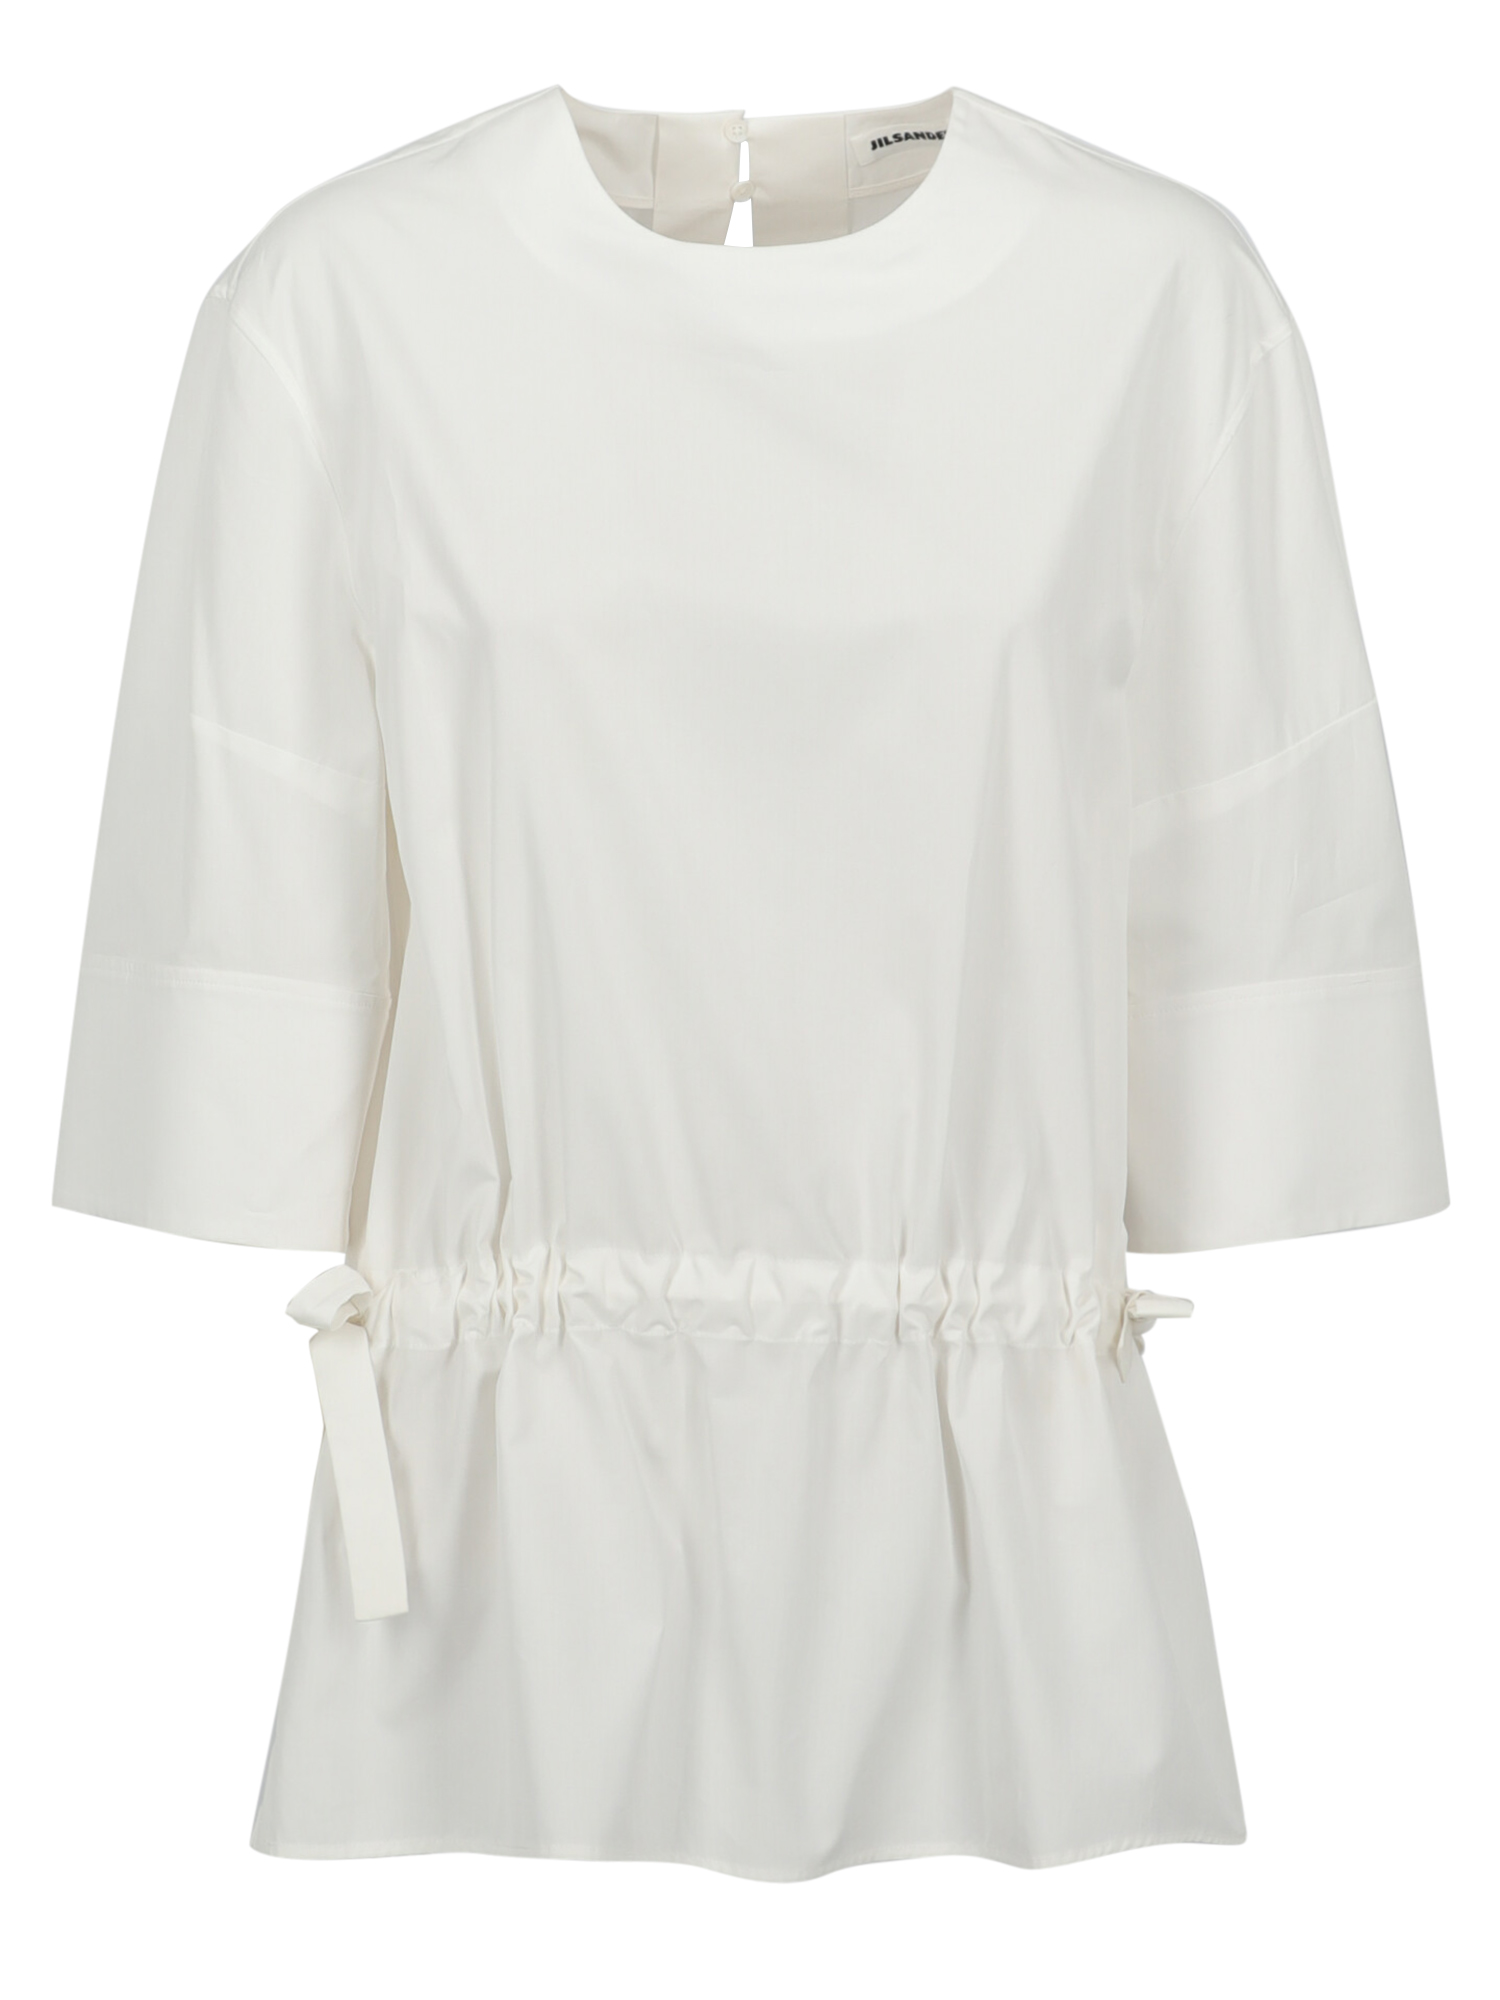 T-shirts Et Tops Pour Femme - Jil Sander - En Cotton White - Taille:  -